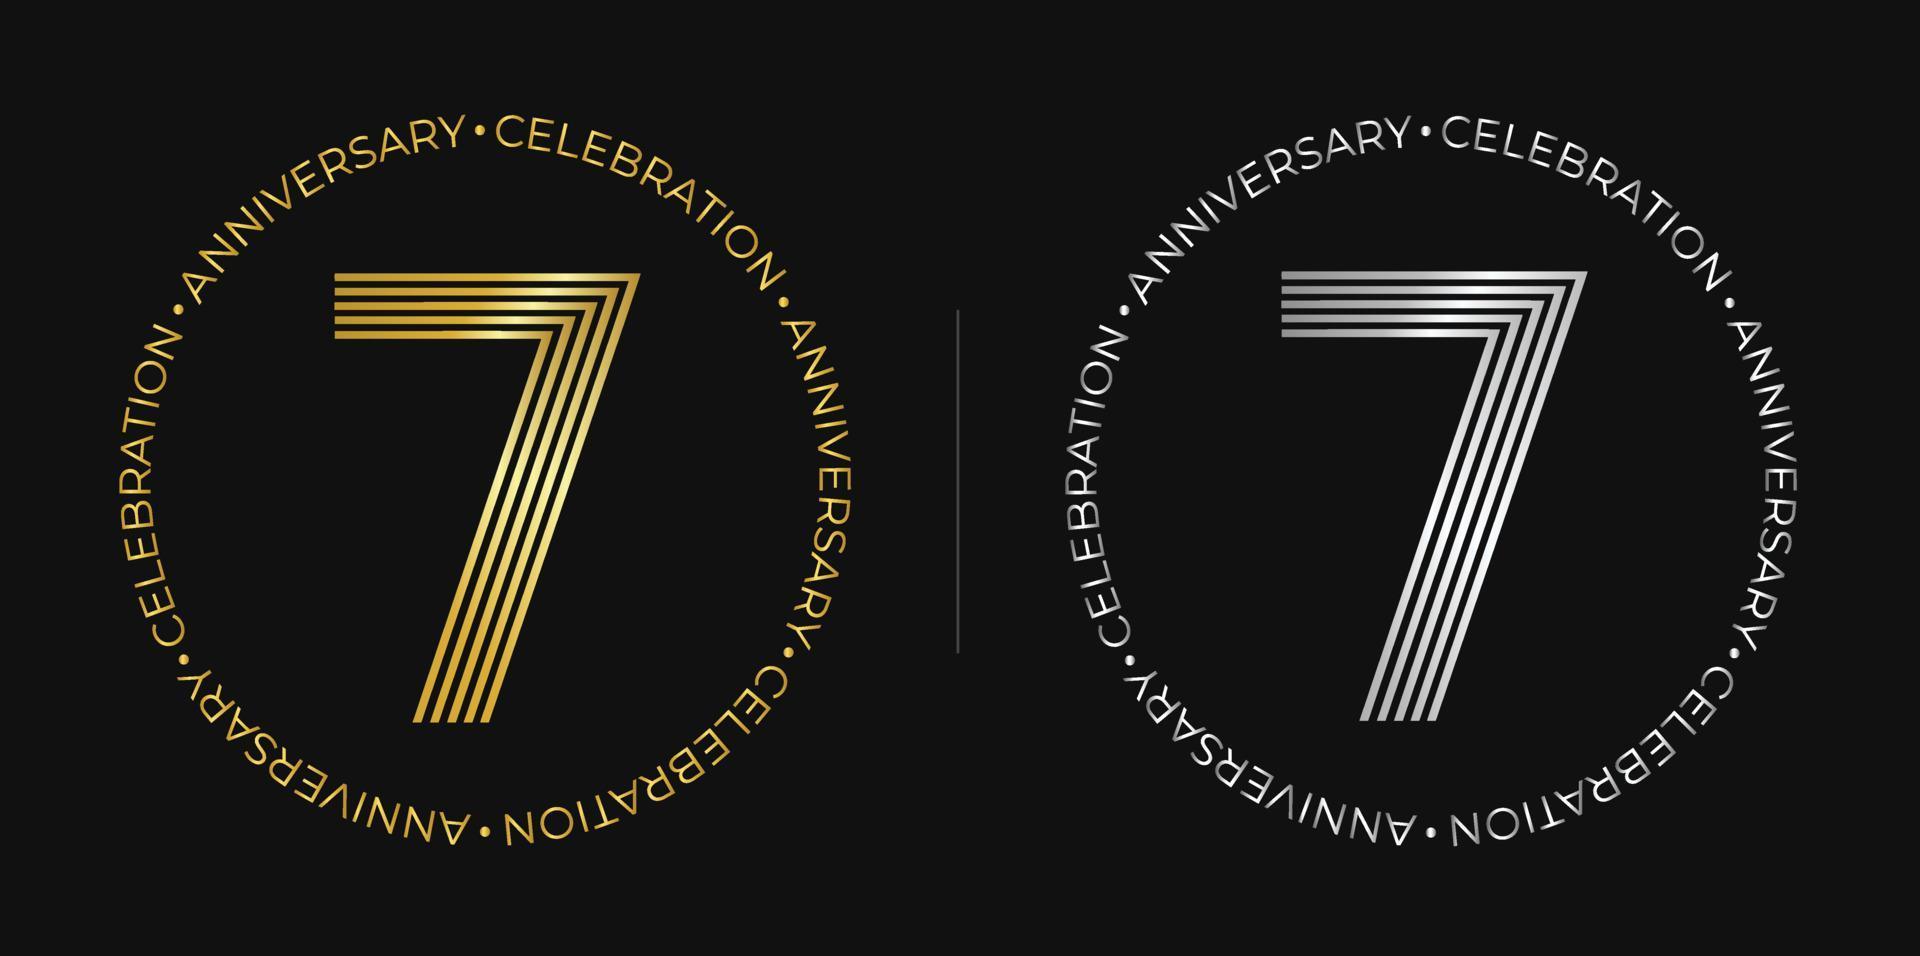 7e verjaardag. zeven jaren verjaardag viering banier in gouden en zilver kleuren. circulaire logo met origineel aantal ontwerp in elegant lijnen. vector